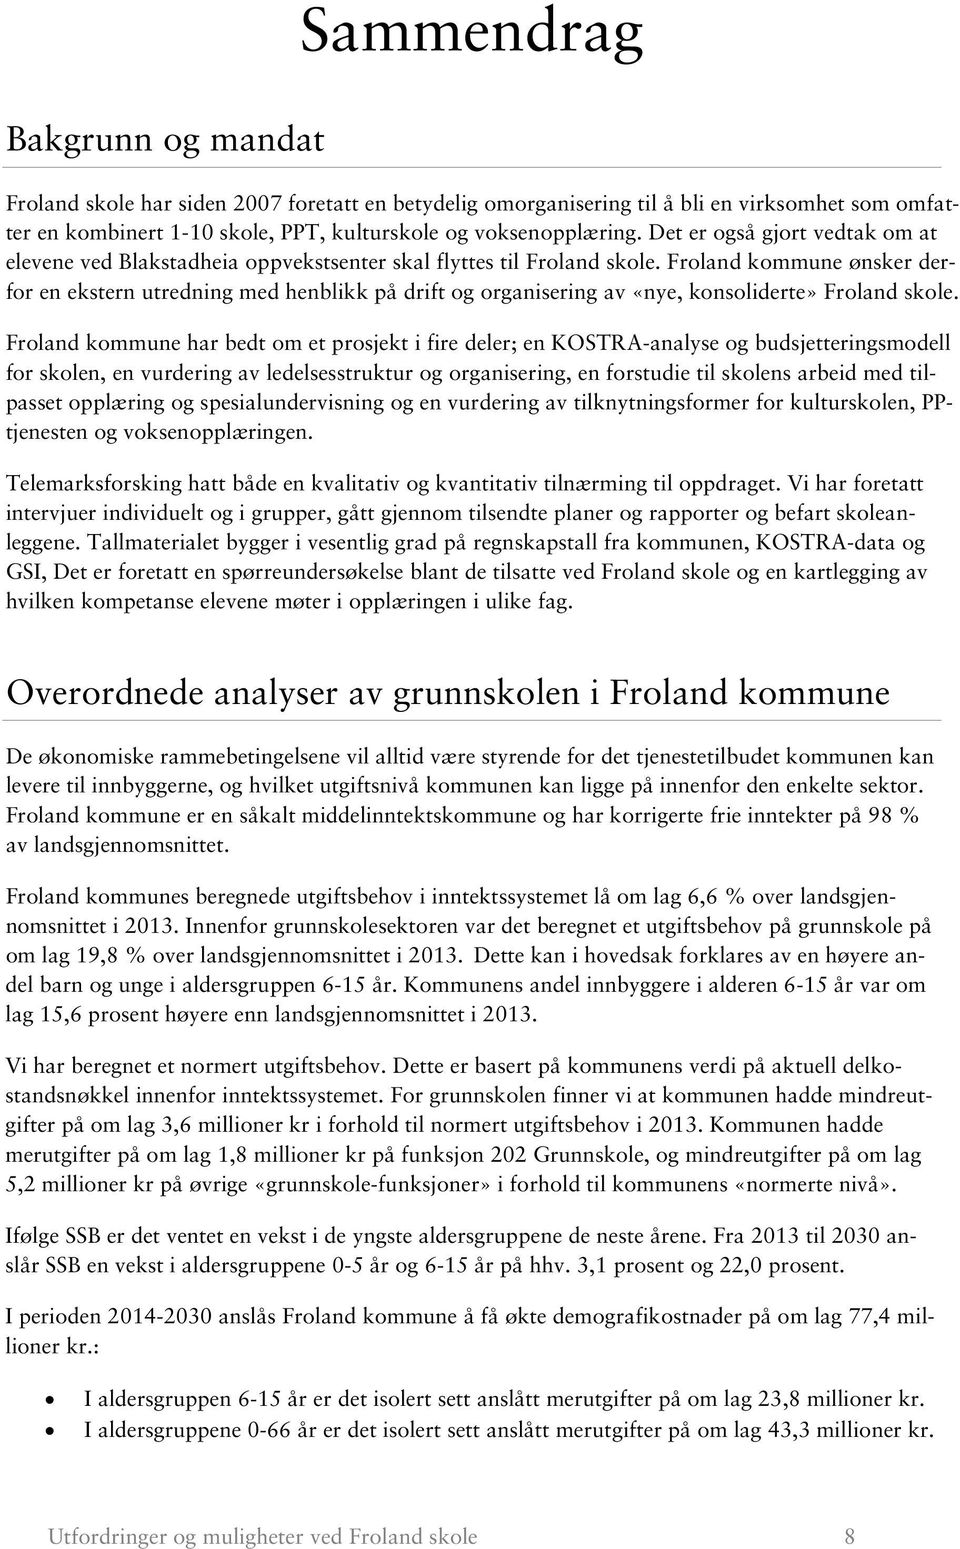 Froland kommune ønsker derfor en ekstern utredning med henblikk på drift og organisering av «nye, konsoliderte» Froland skole.